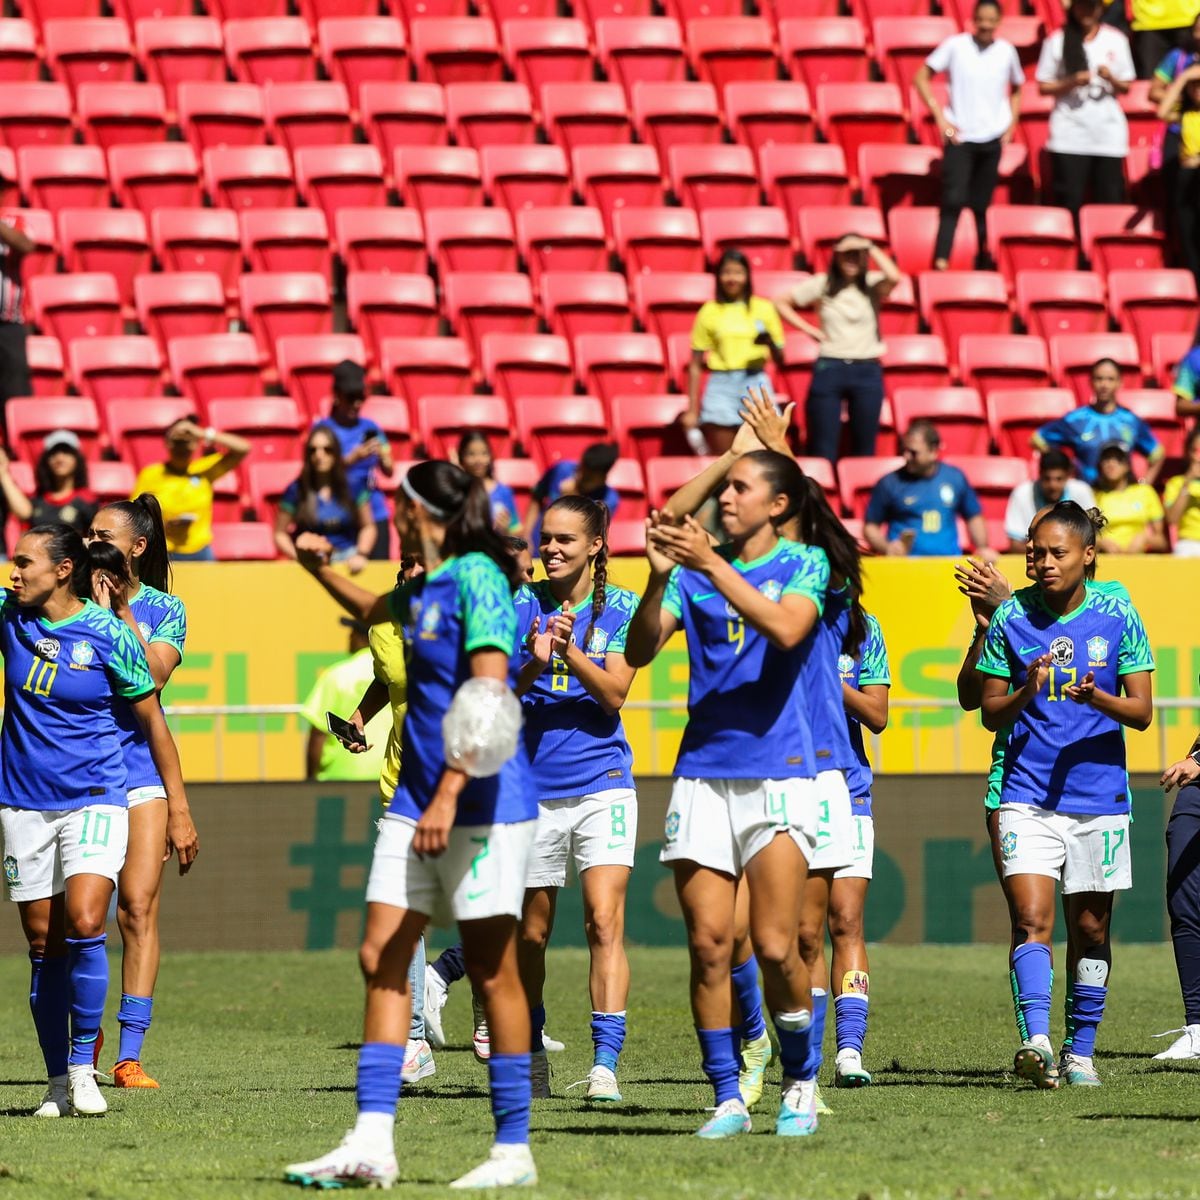 Copa do Mundo Feminina: Sisejufe requer aos tribunais ponto